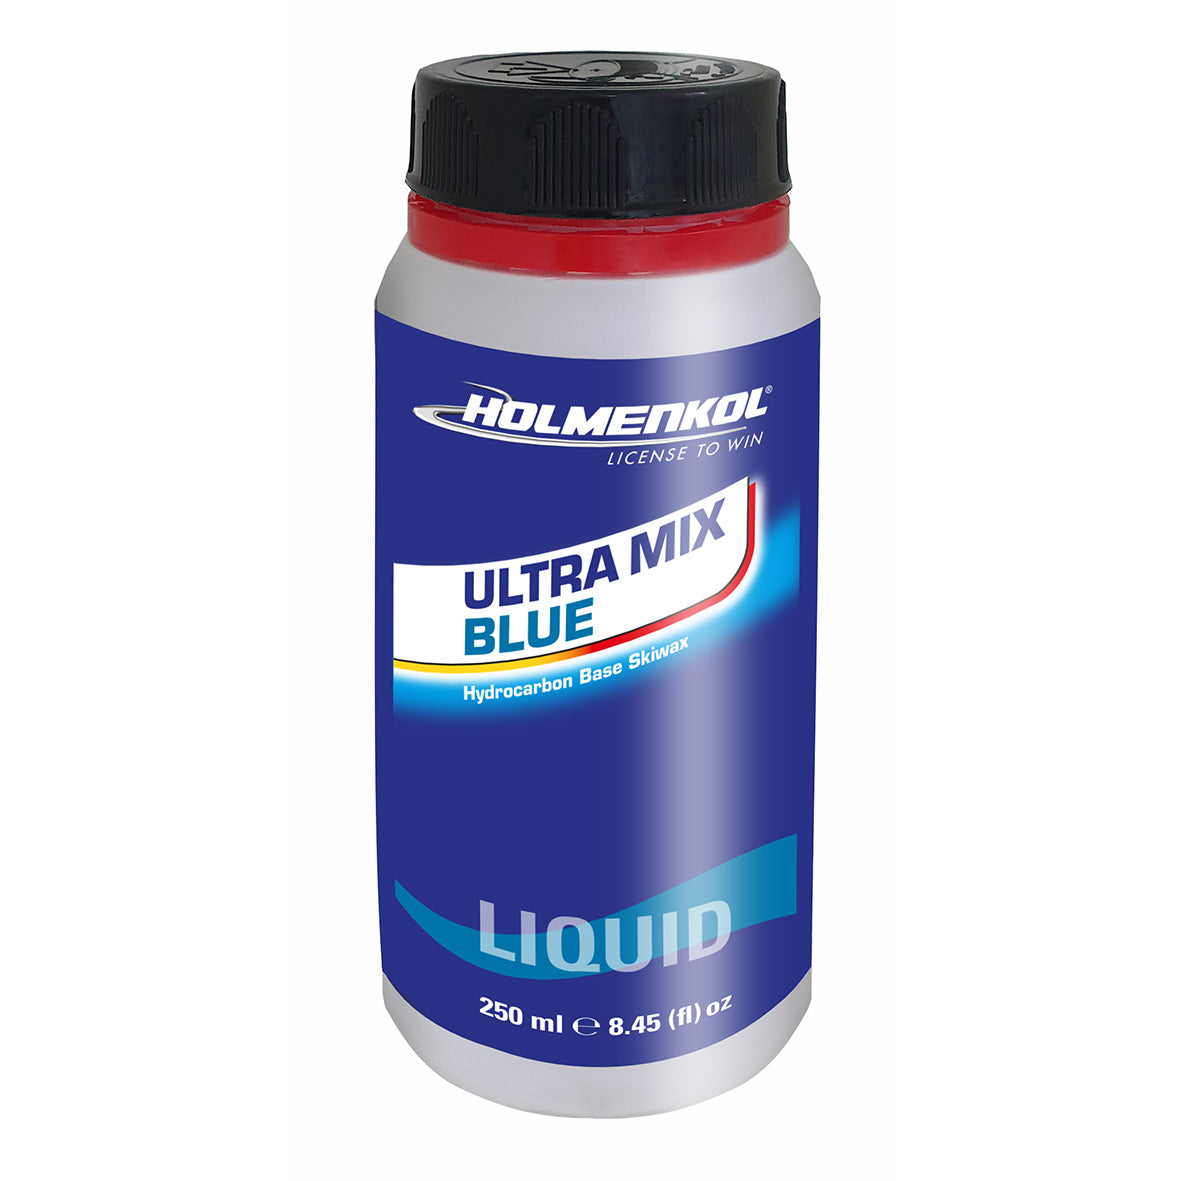 Holmenkol Ultra Mix Blue liquid  250ml